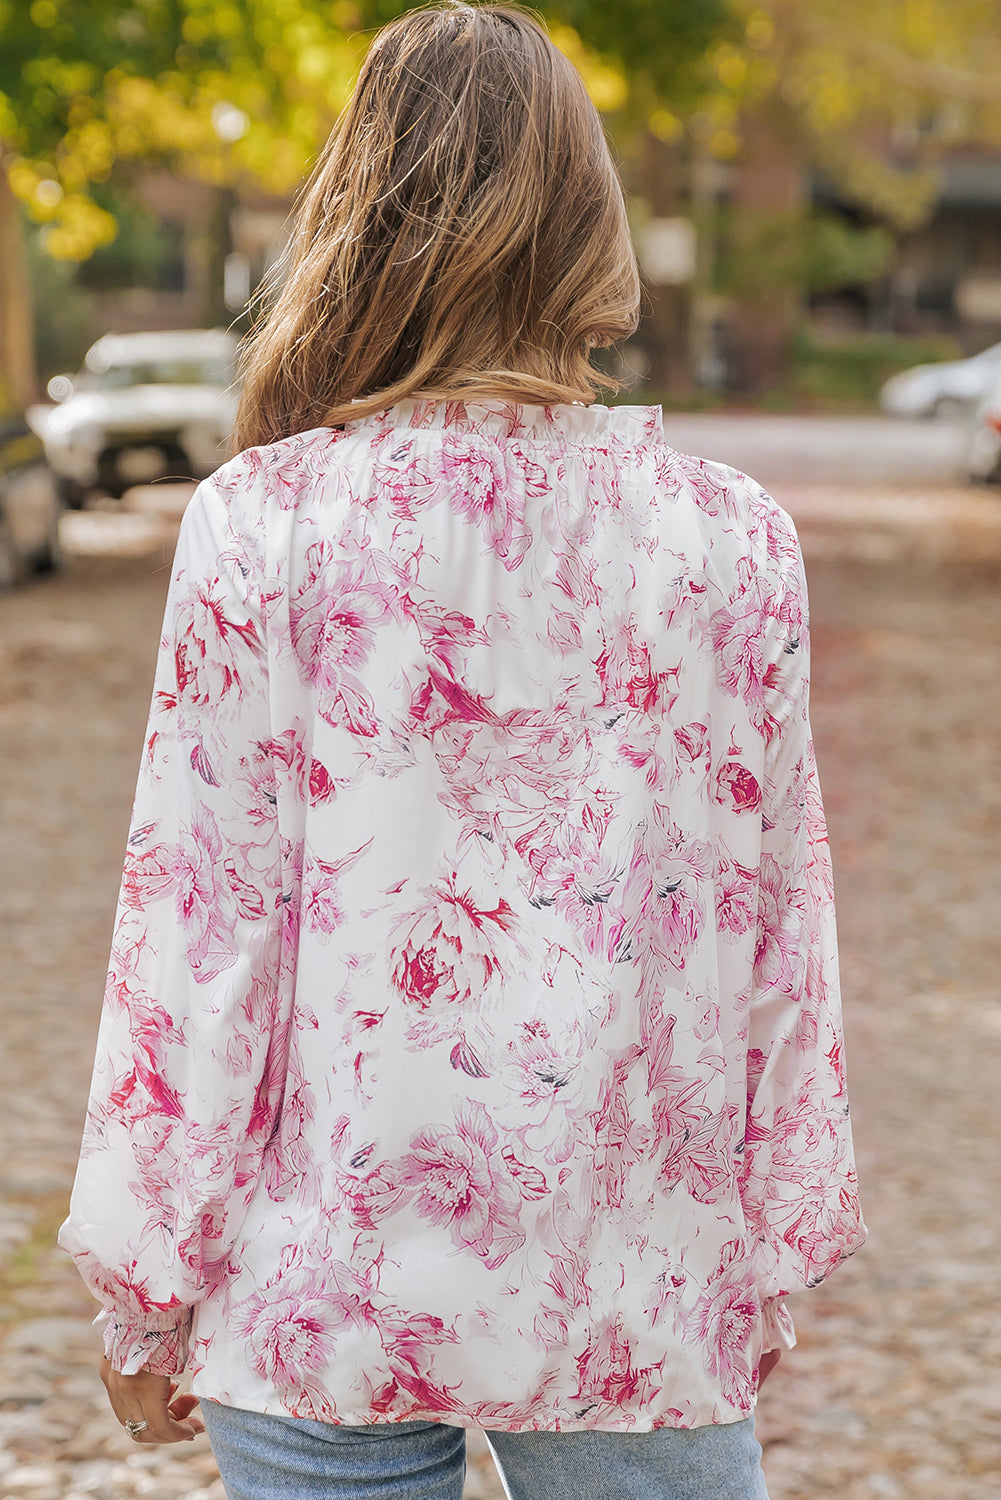 Večbarvna živahna bluza z naborki, potiskanimi s cvetjem